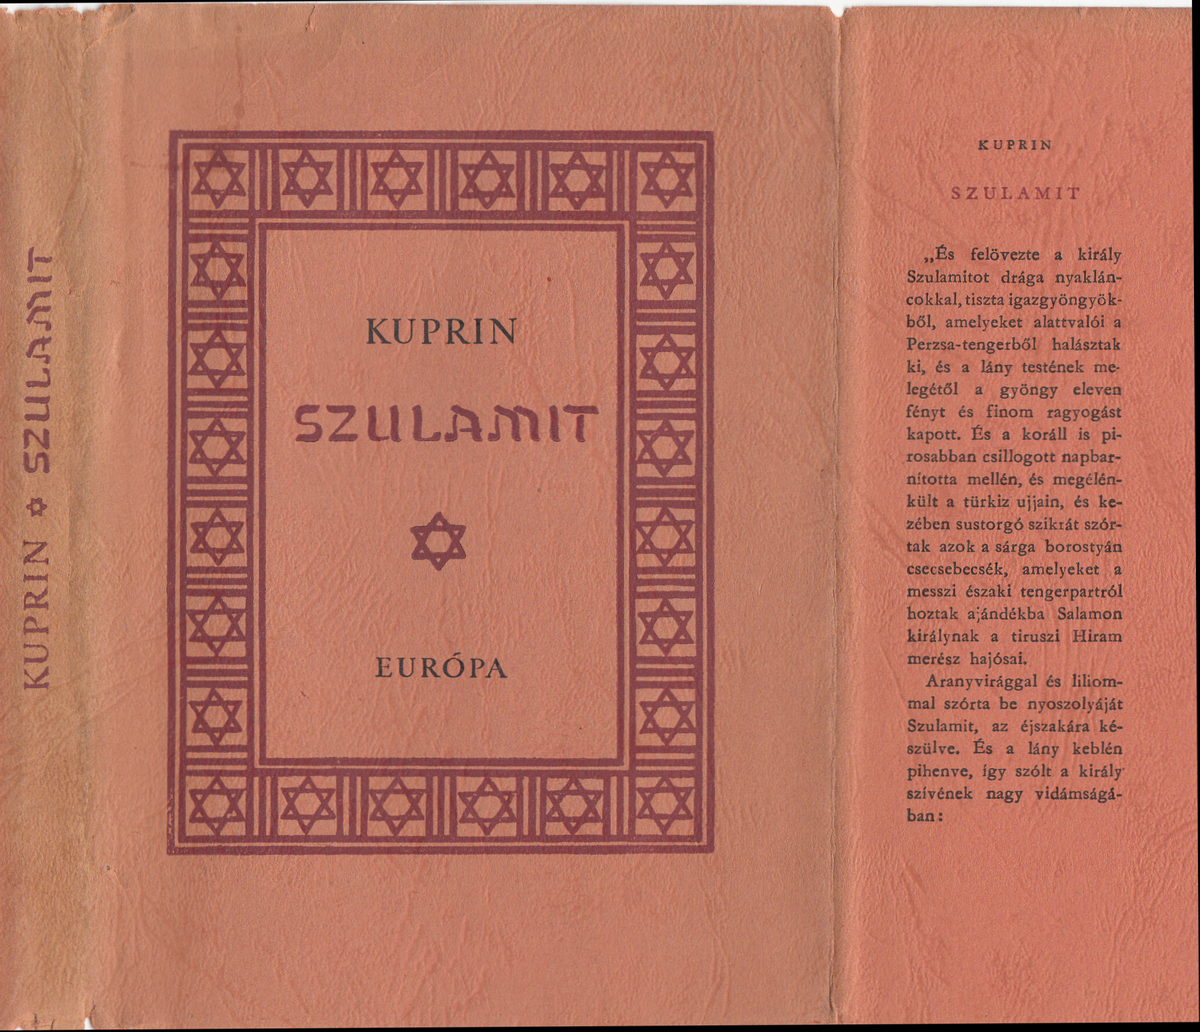 Kuprin, Alekszandr Ivanovics: Szulamit, Kuprin ; ford. Gellért György ; [ill.] Molnár Ágnes | Library OPAC